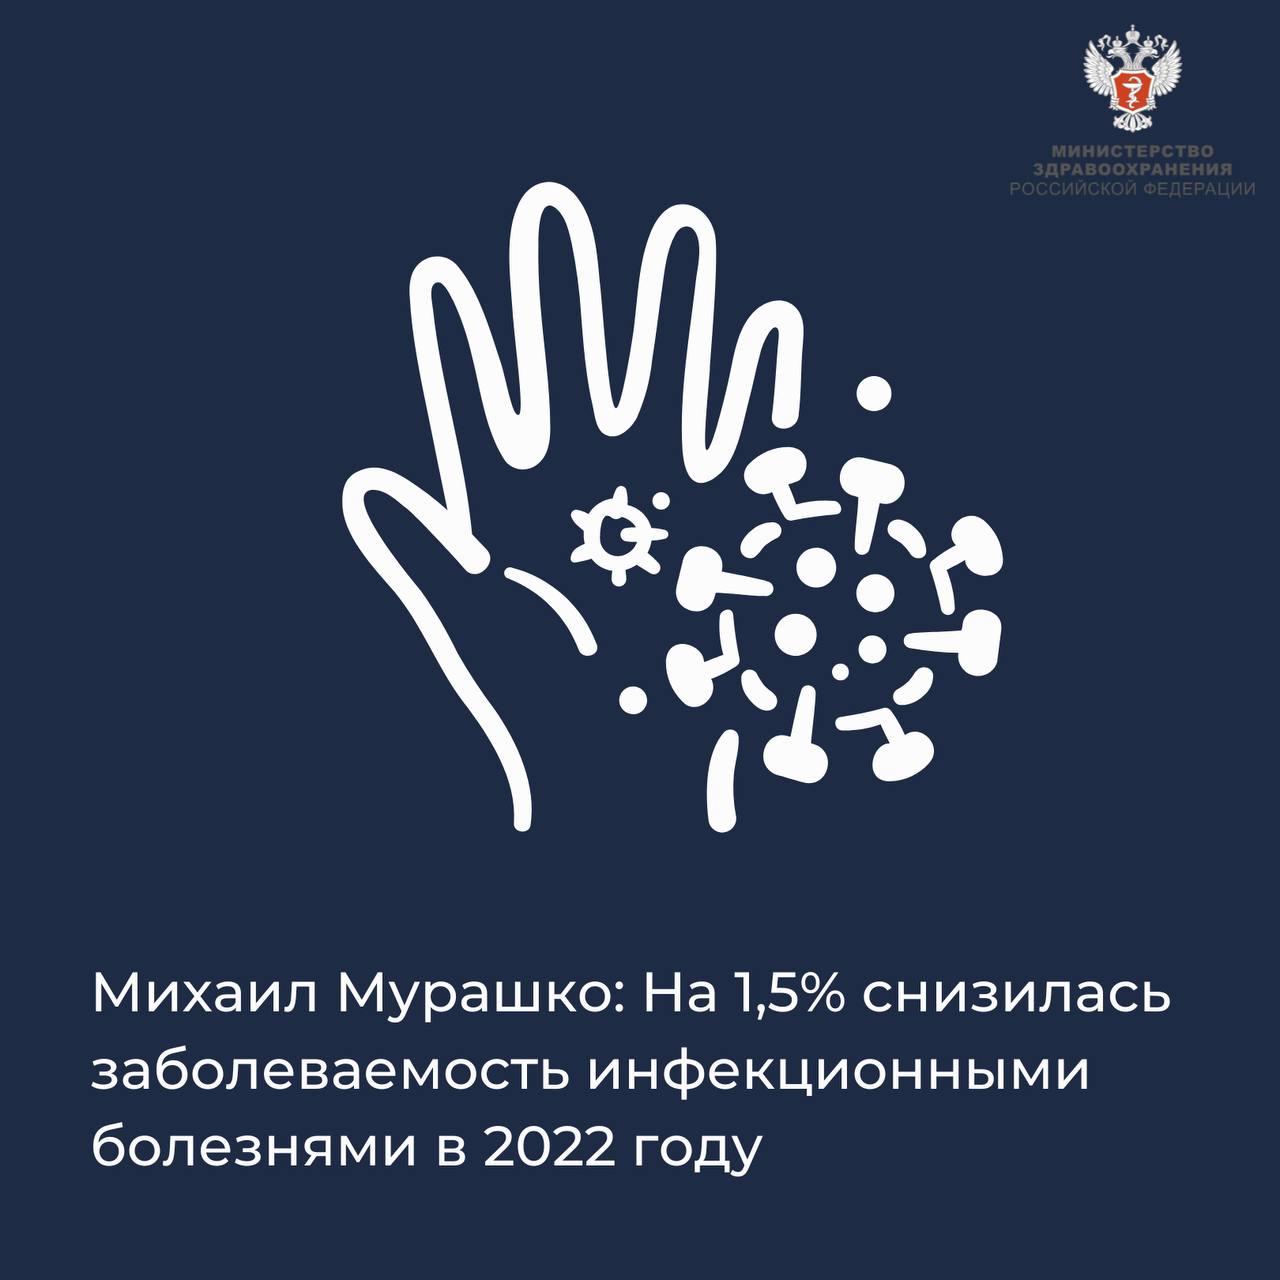 Михаил Мурашко: На 1,5% снизилась заболеваемость инфекционными болезнями в 2022 году